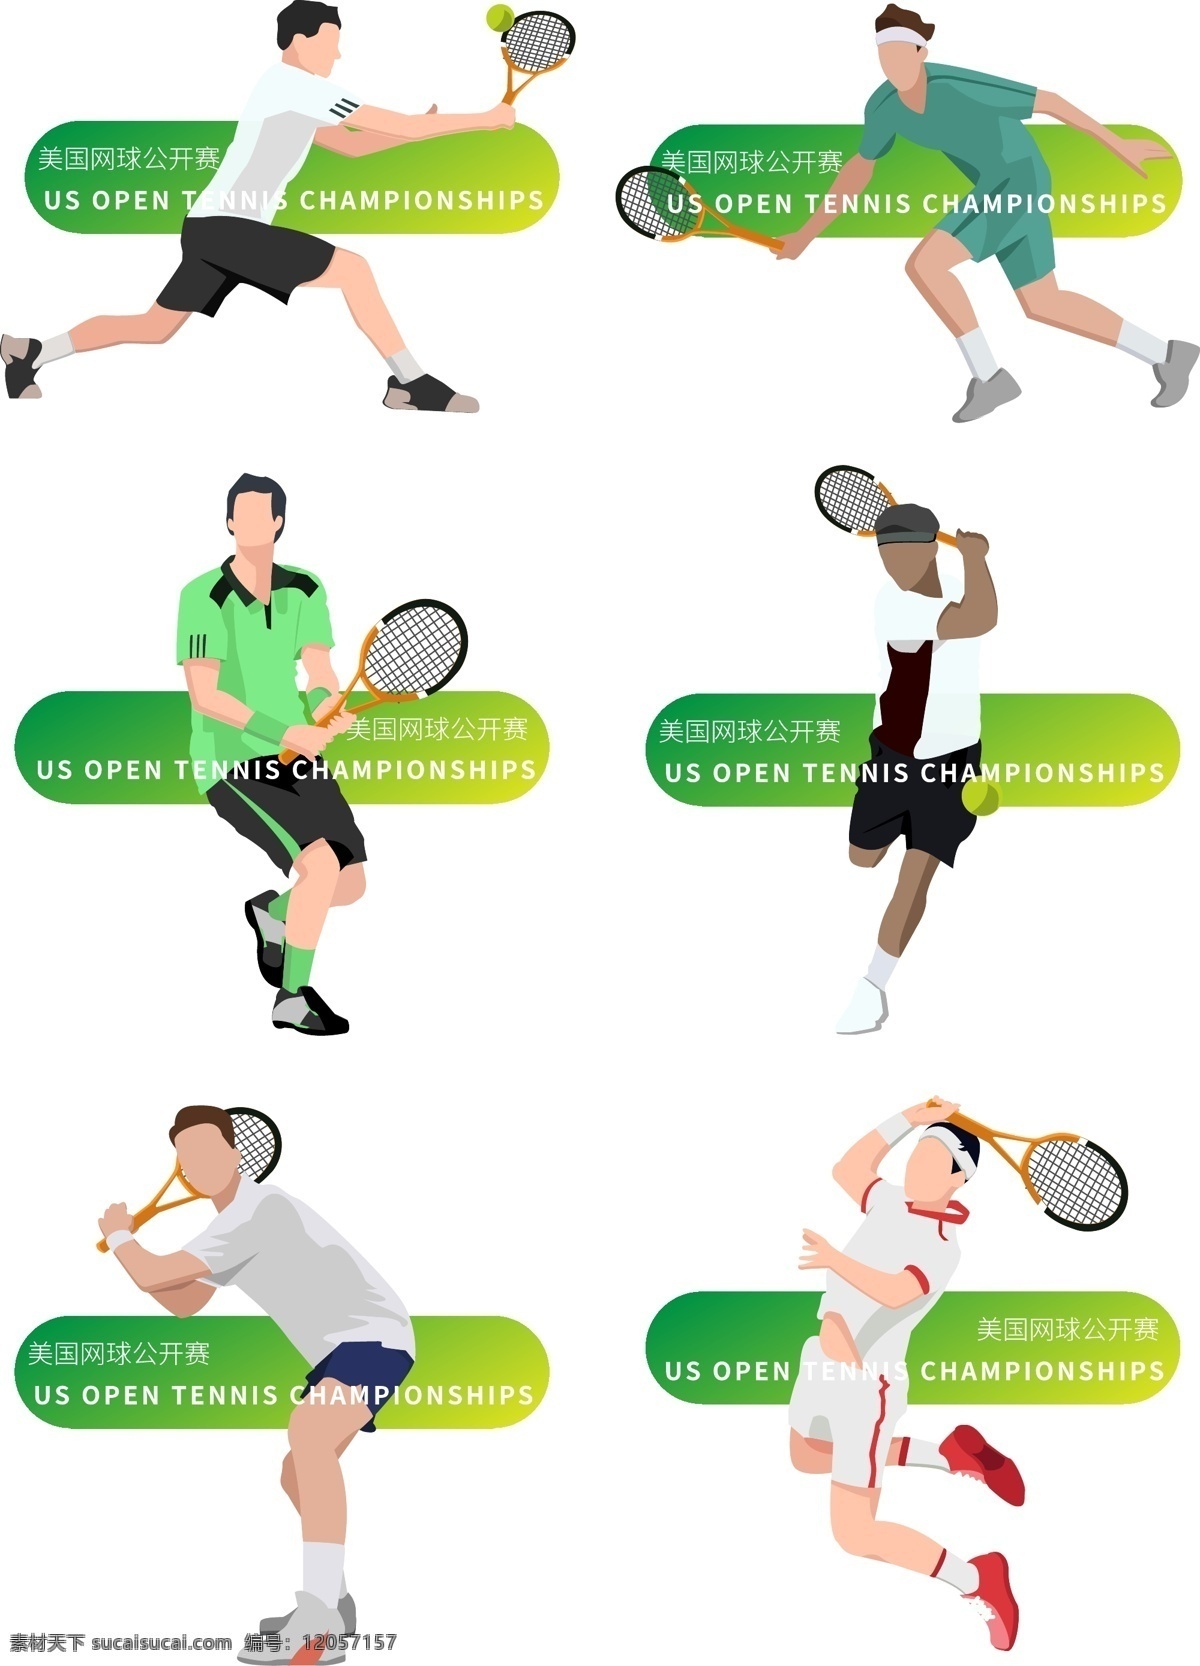 美国 网球 公开赛 比赛 人物 矢量 插画 合集 打网球的人 网球比赛 运动 网球公开赛